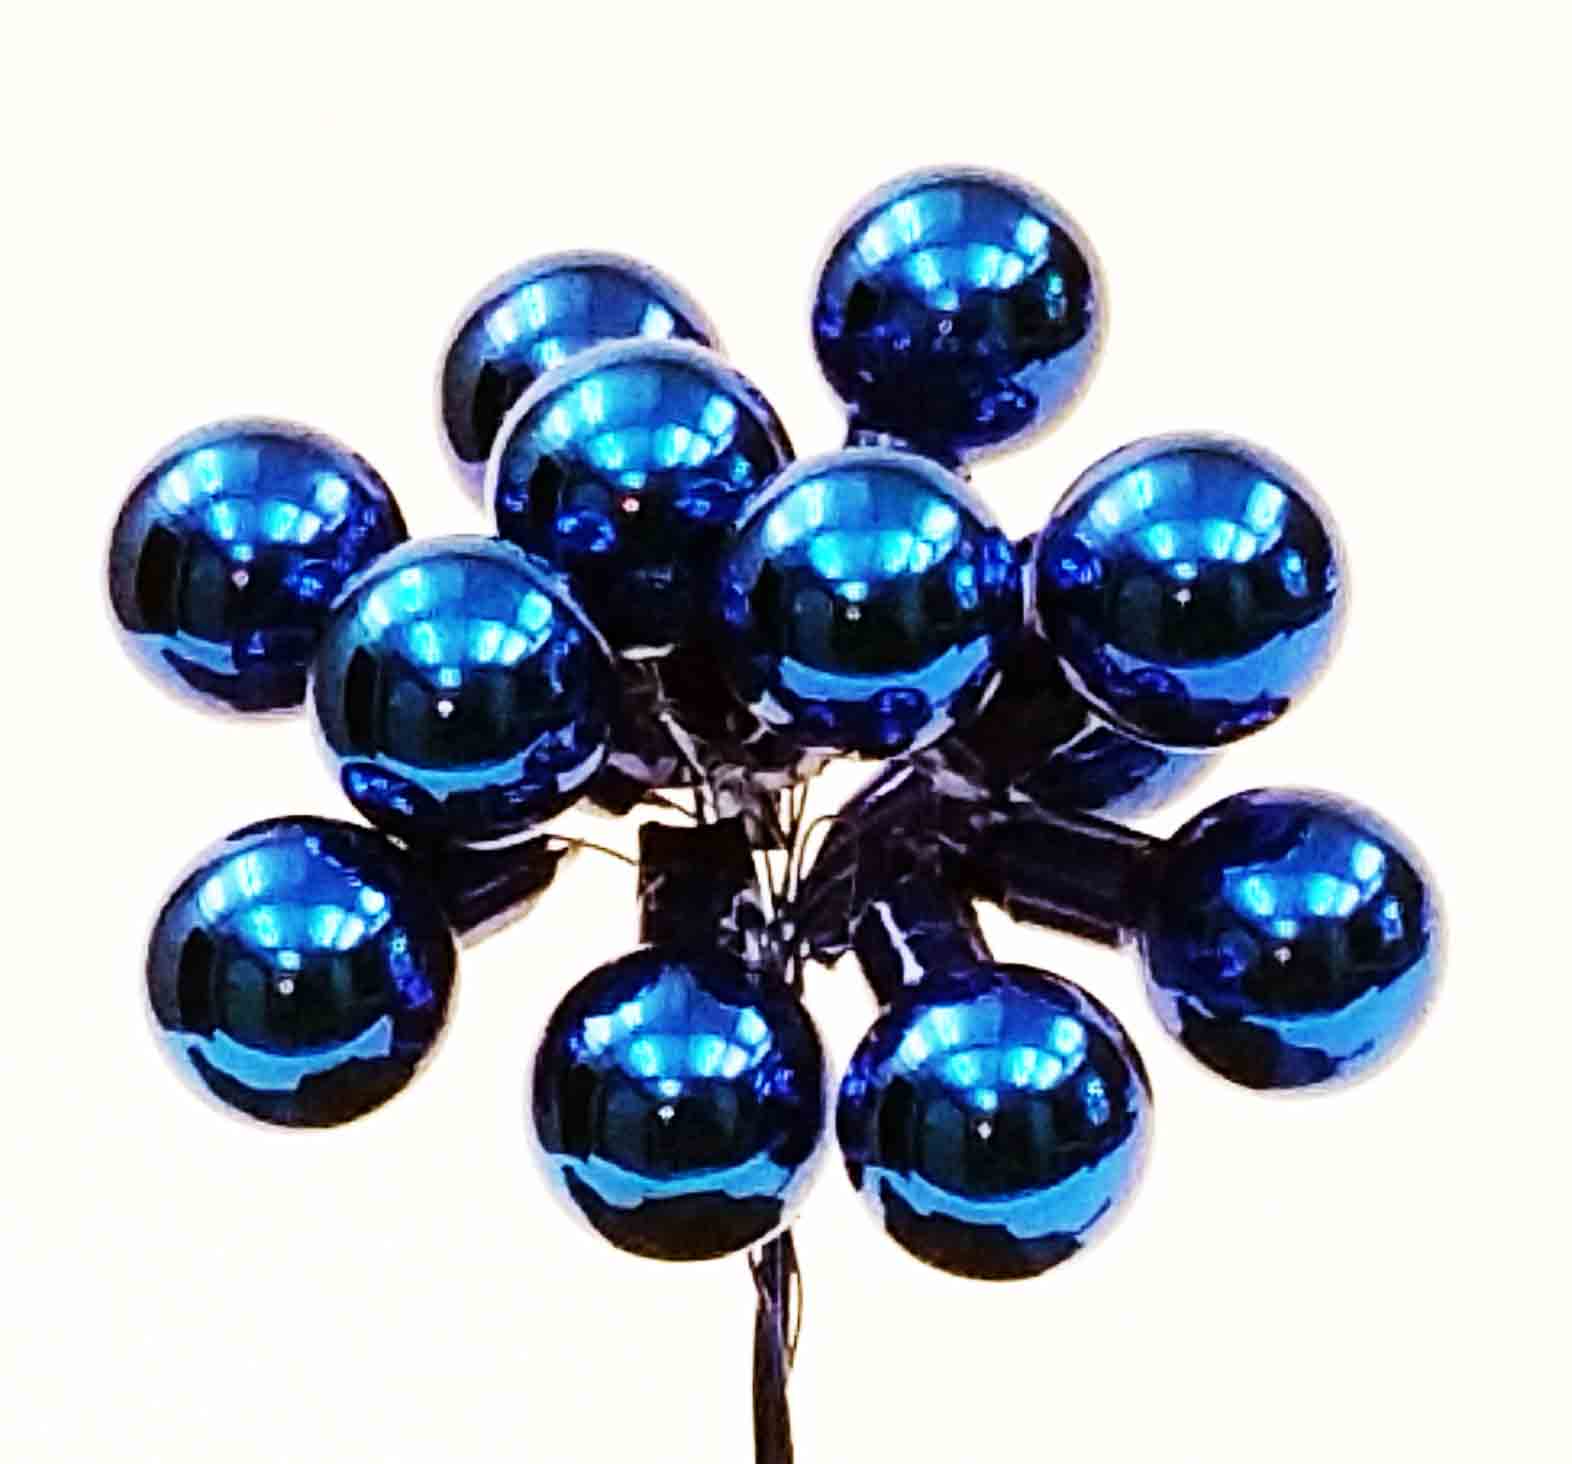 X5255 - Blue 25mm Glass Balls - 3.20 bu, 2.90/12